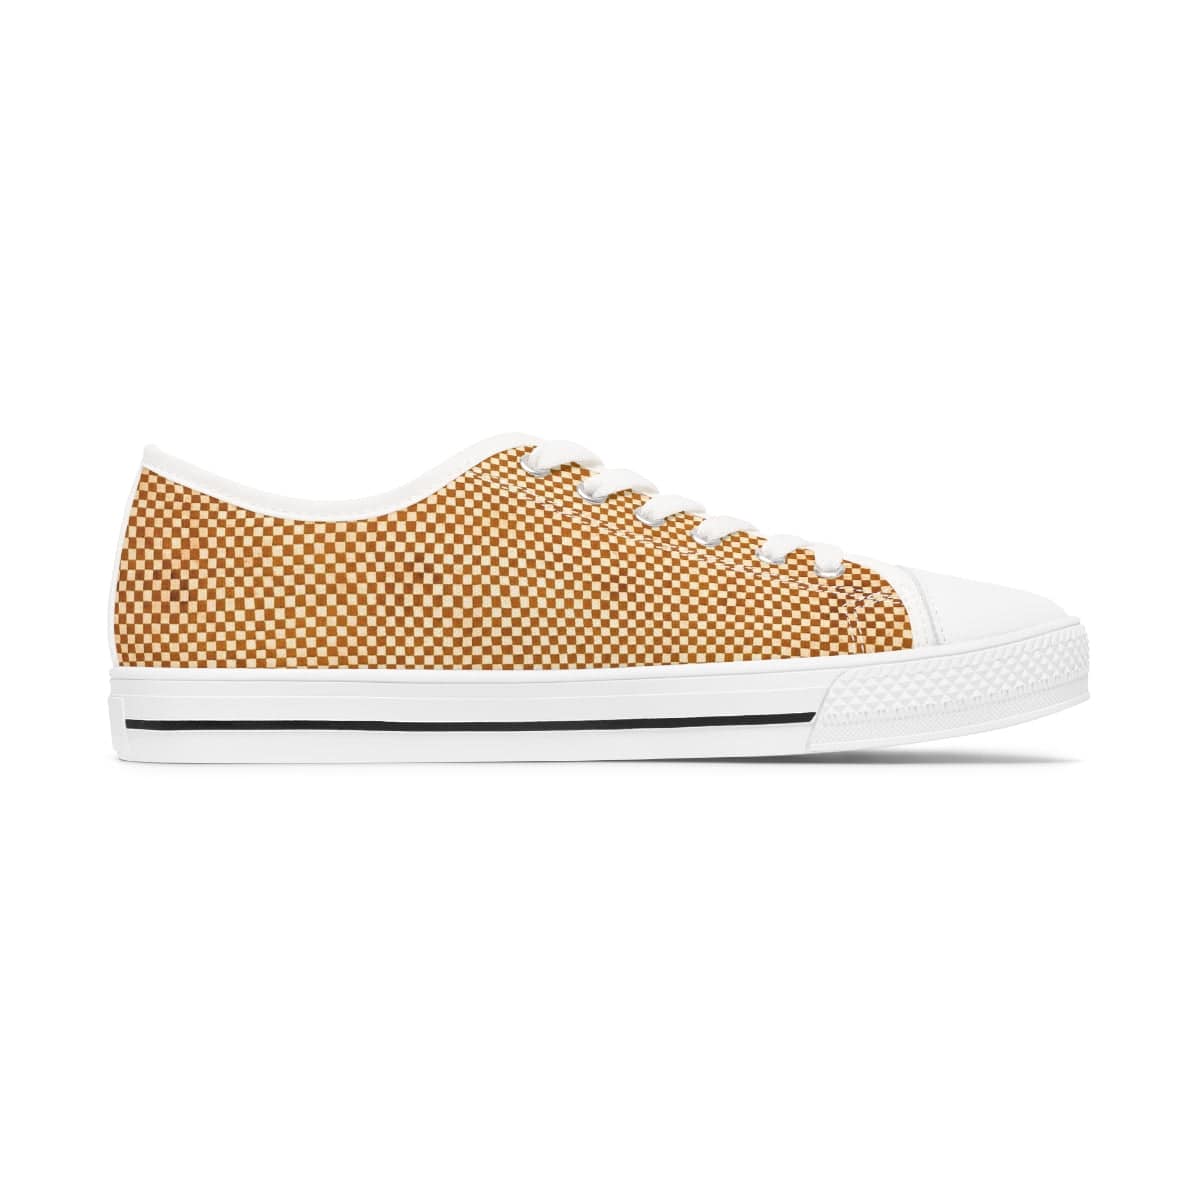 Honeycomb Low Top Sneakers - Pixel Gallery